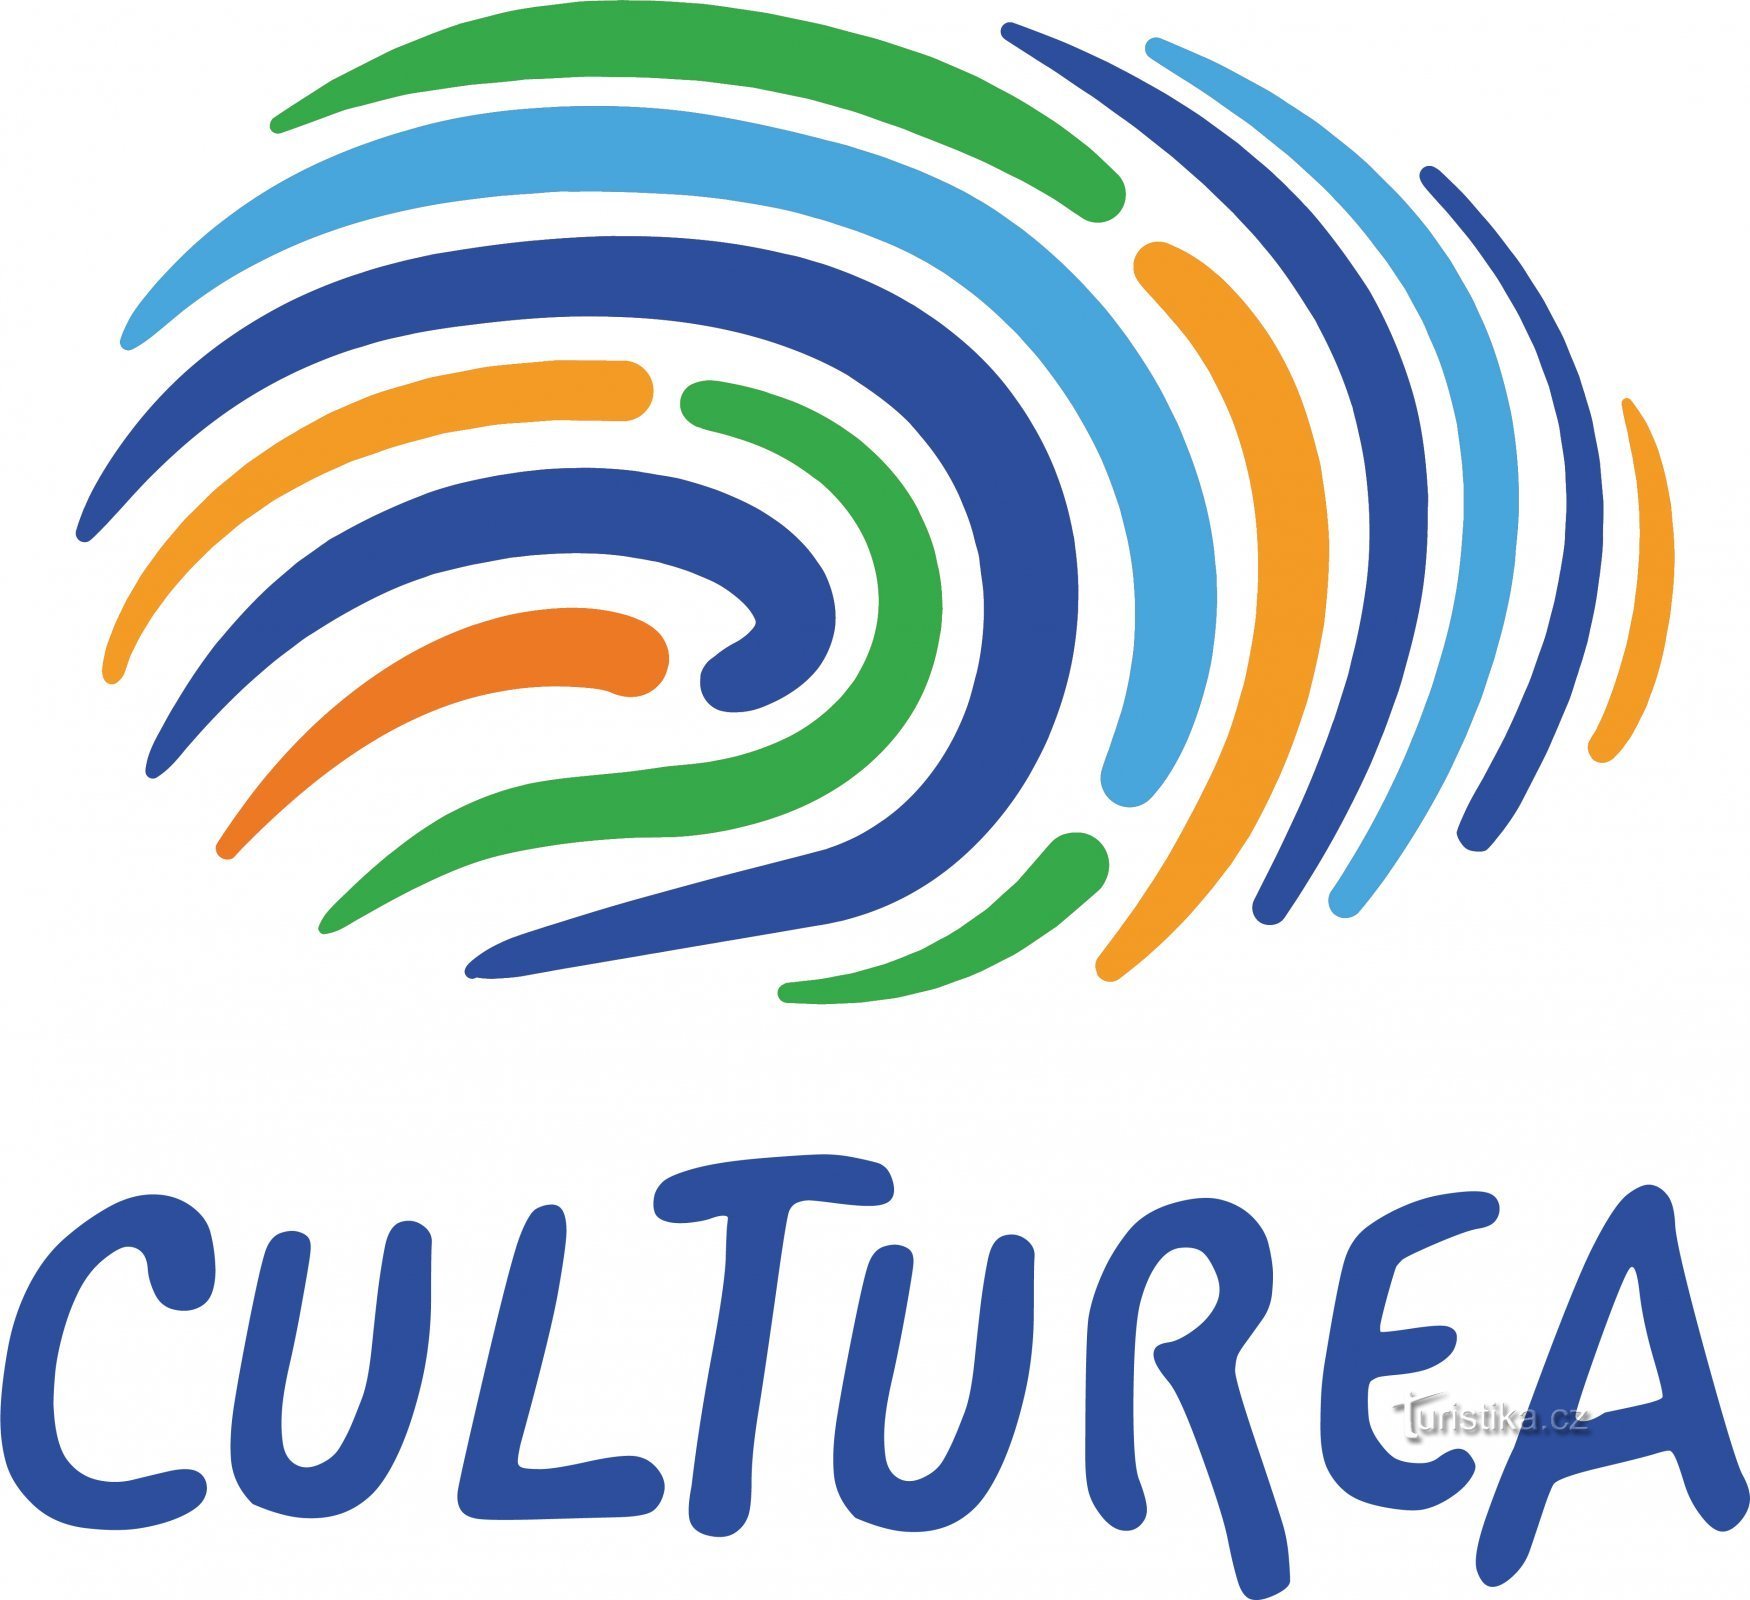 «Ταξιδέψτε διαφορετικά» με το έργο Culturea!